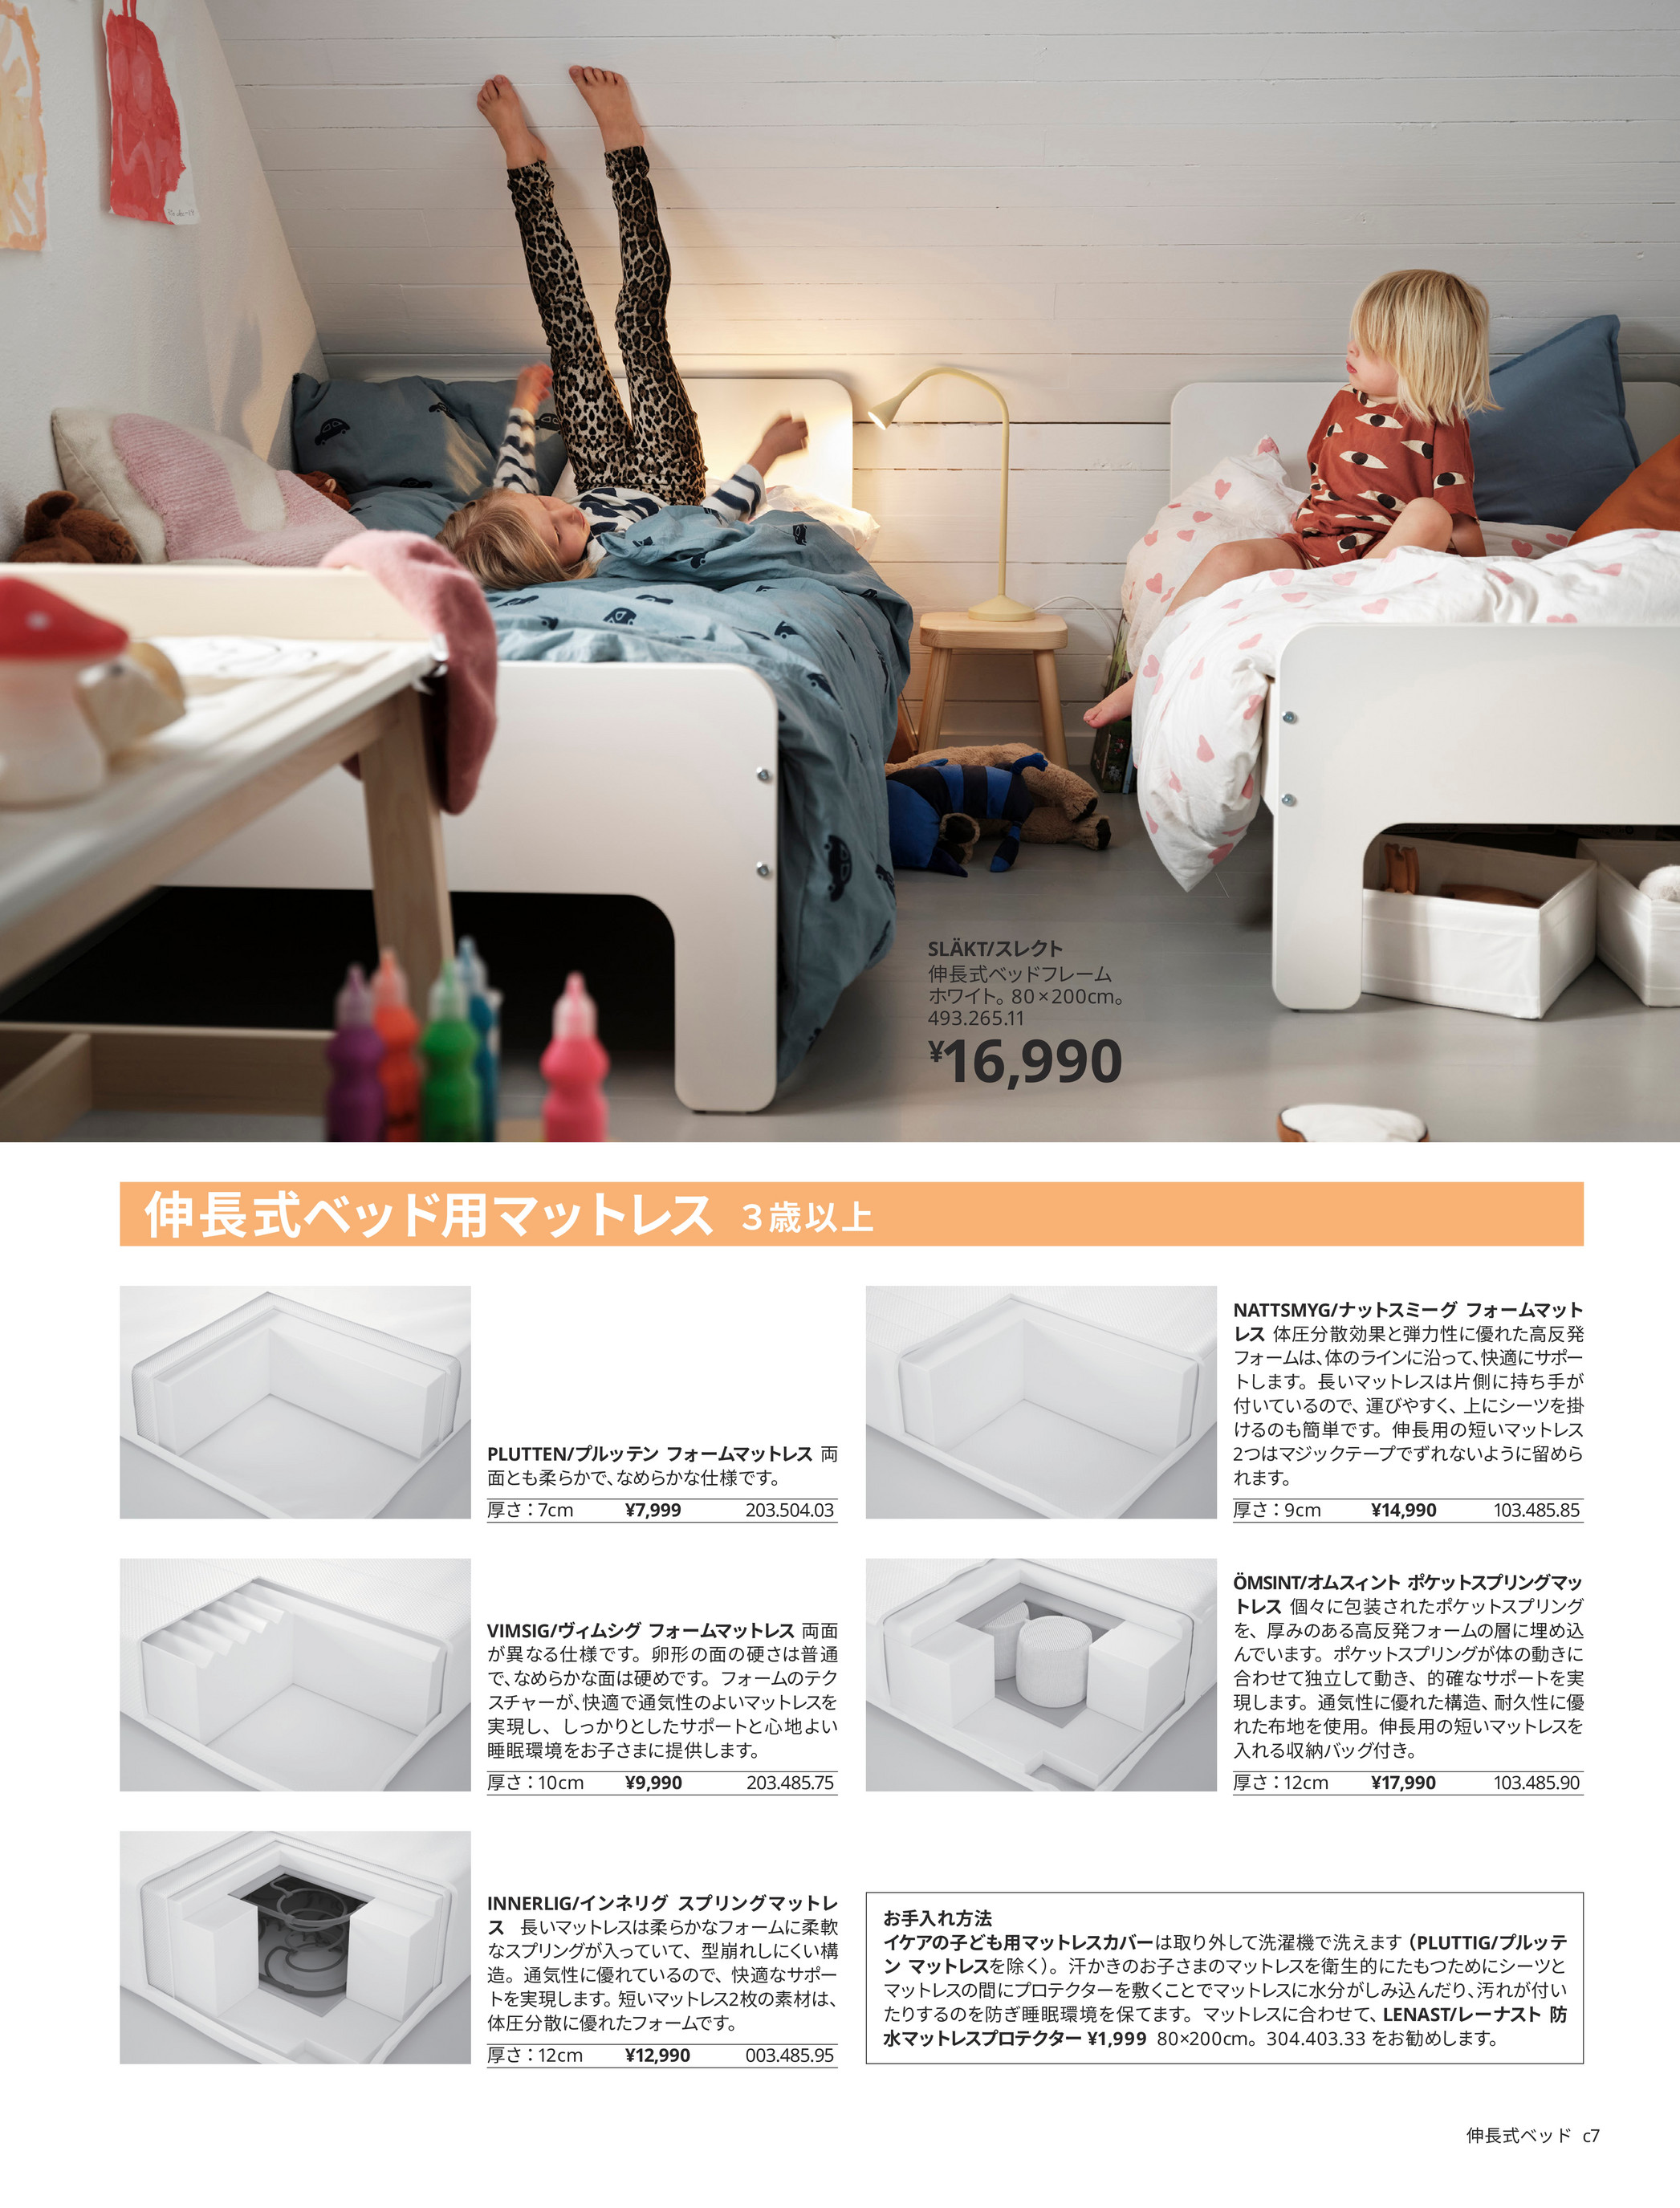 IKEA 赤ちゃんと子どもの眠りのカタログ - ページ 6-7